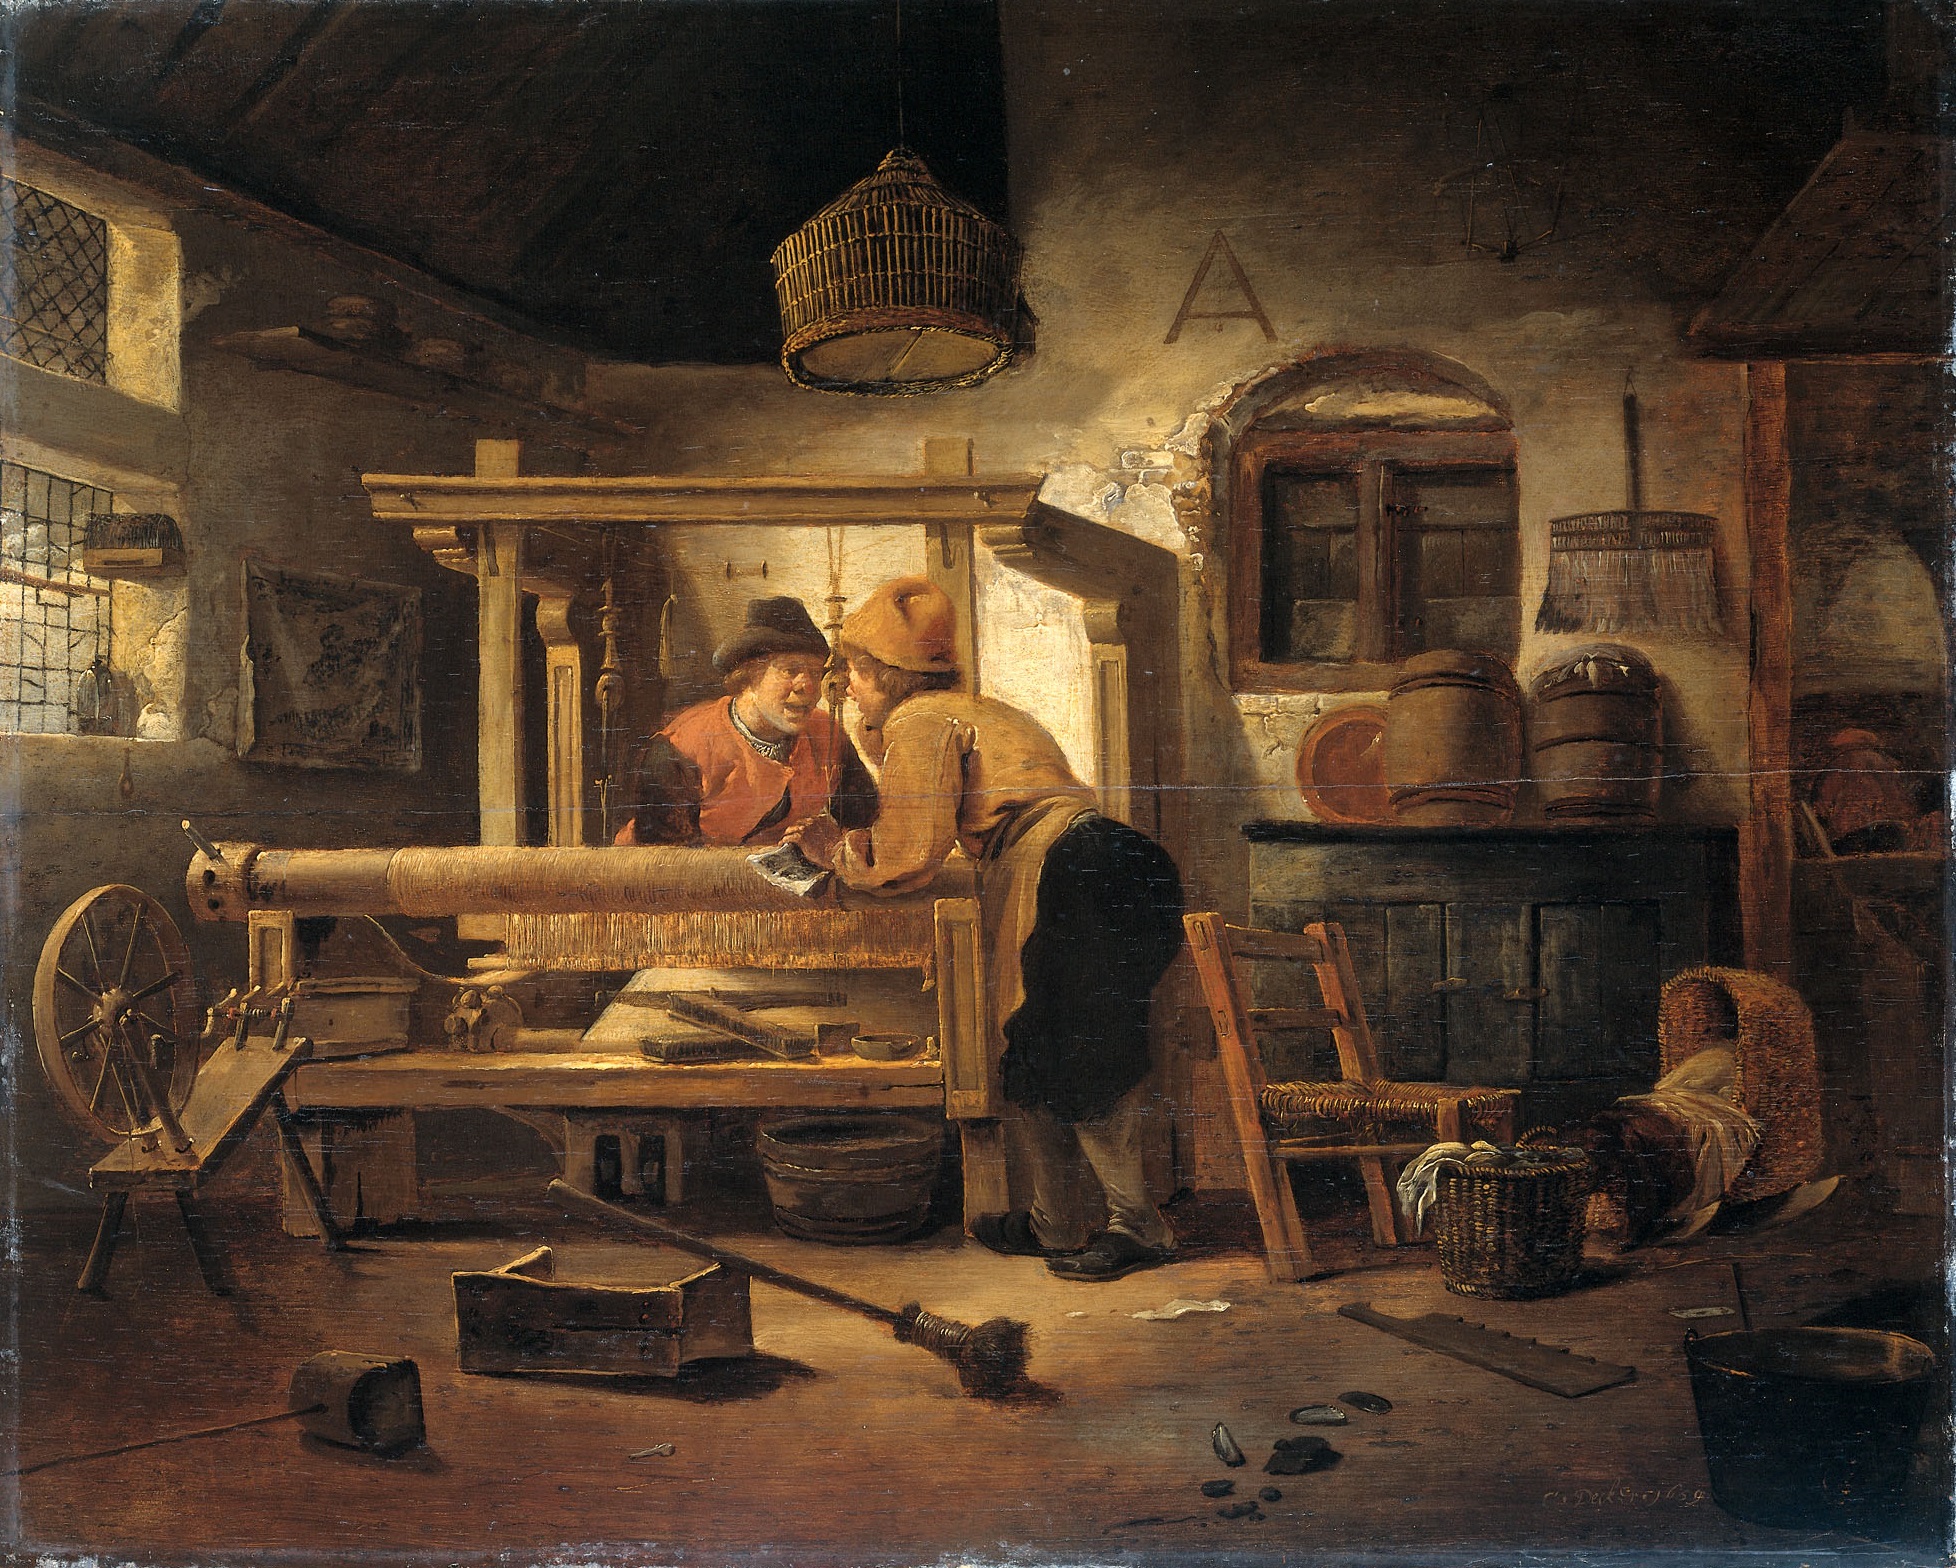 Atelier de tisserand au 17ème siècle